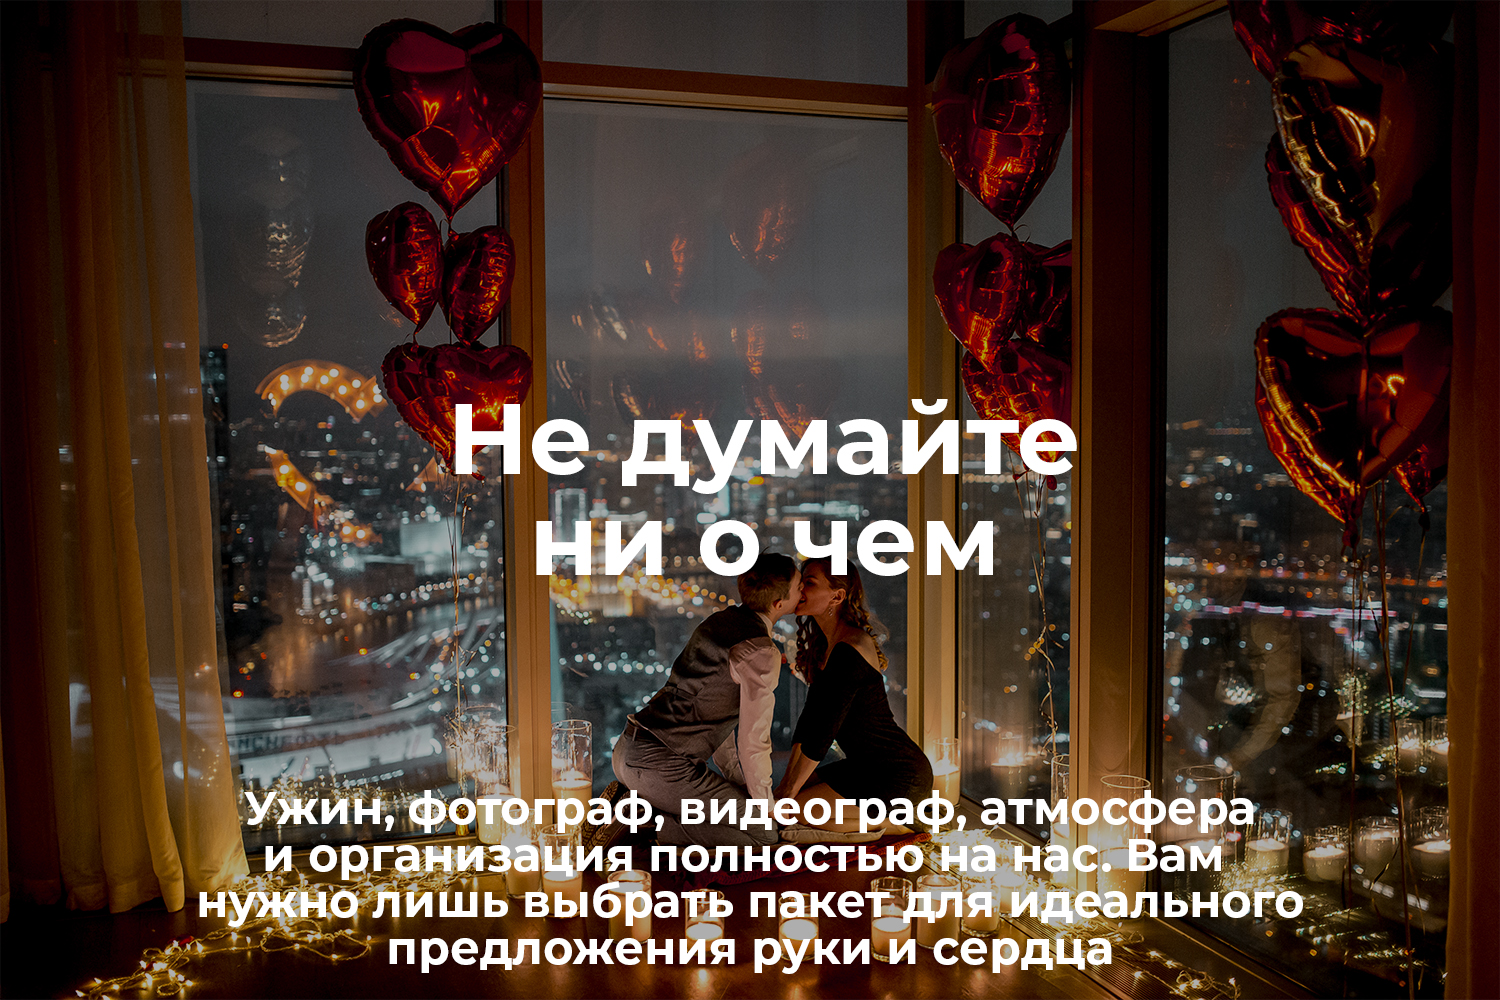 Предложение руки и сердца в Moscow City декор. С открытым сердцем предложение